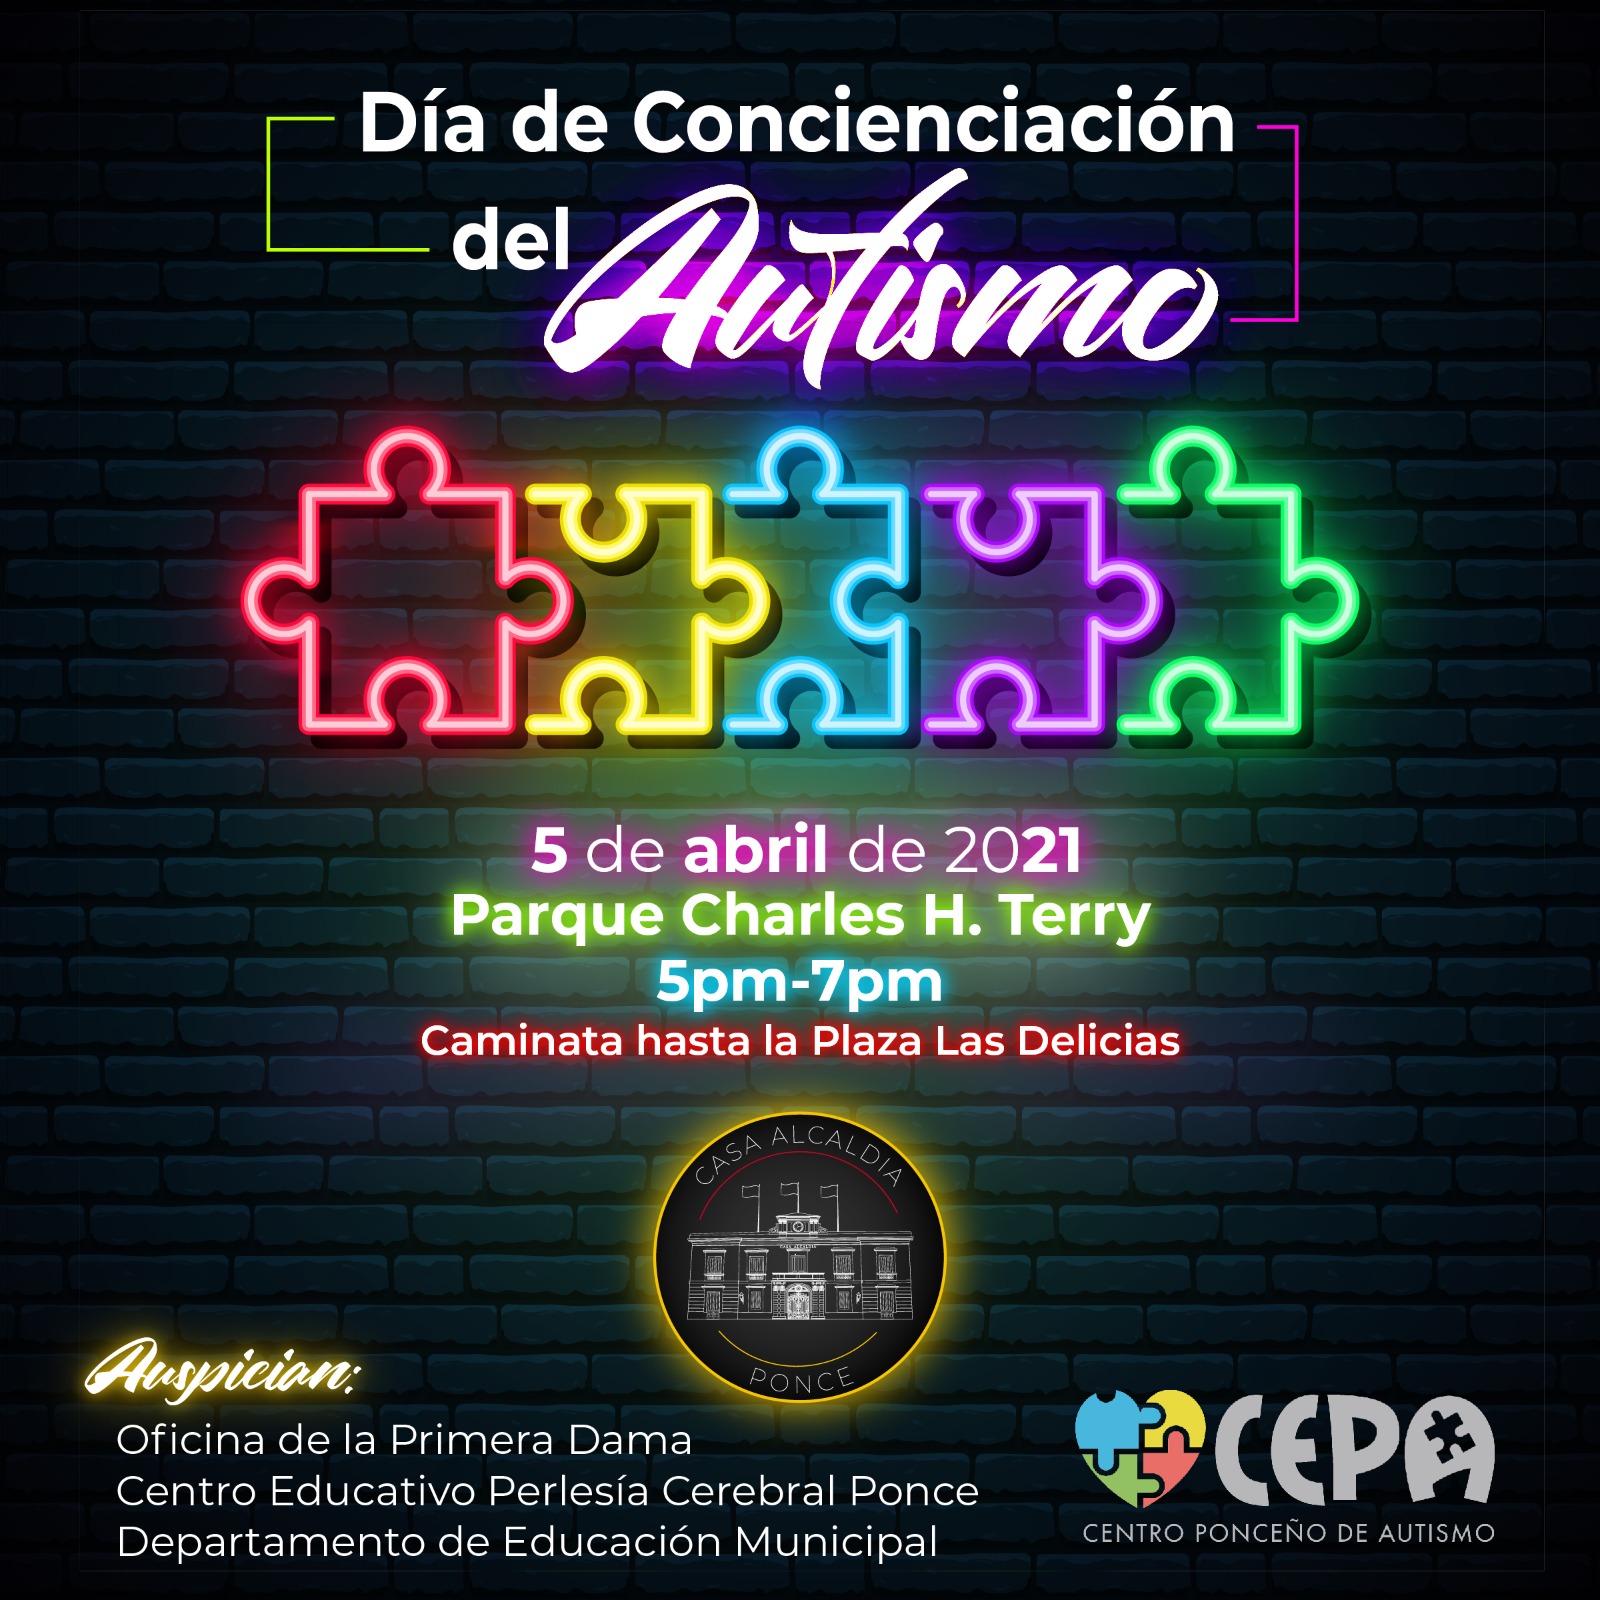 Ponce celebra el Día de Concienciación del Autismo